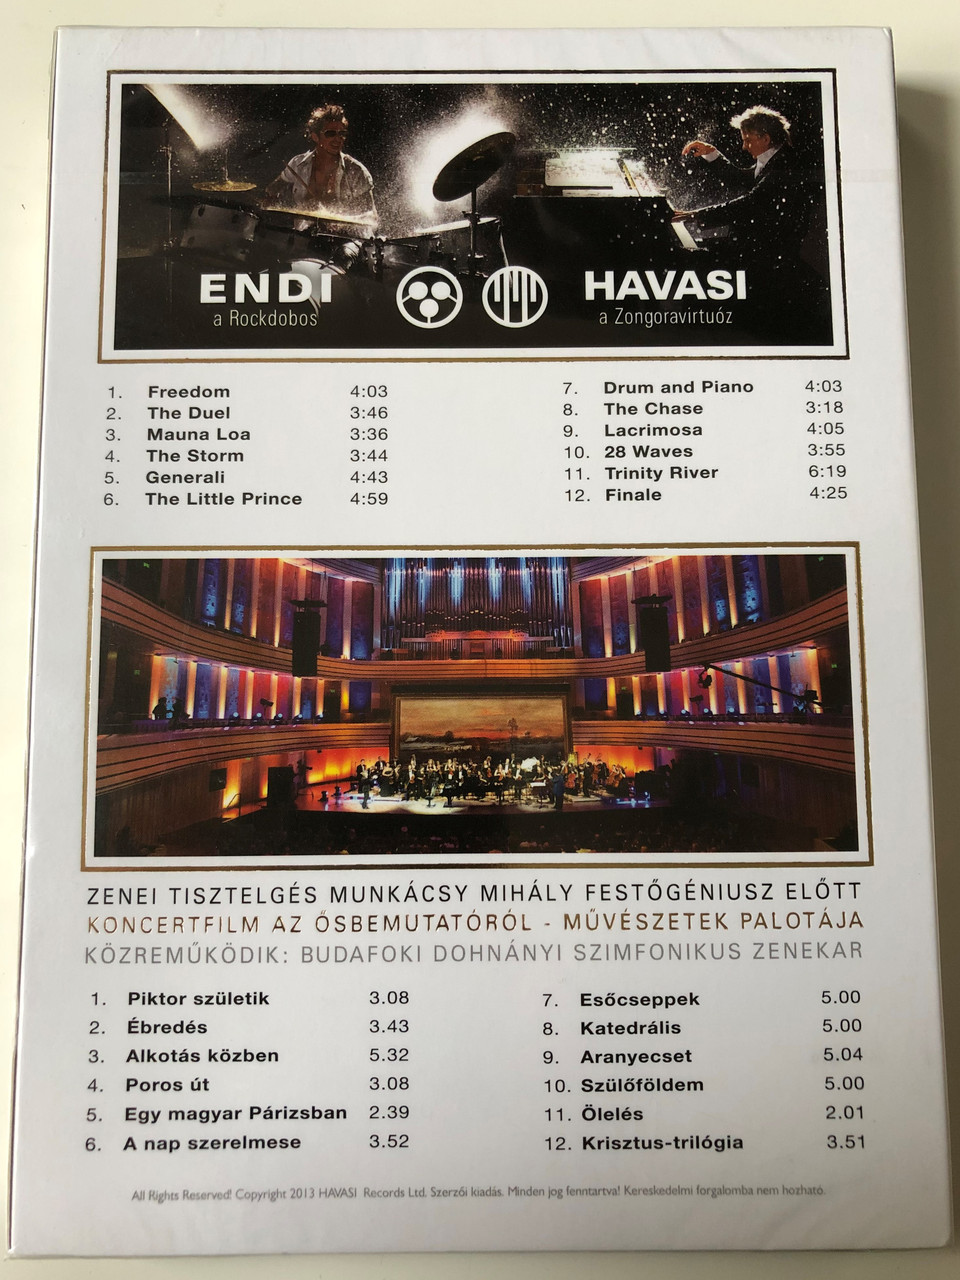 Havasi - Drum & Piano CD - Ecset & Zongora DVD Limited Edition / 2 lemezes  extra DVD és CD változat / Modern classical Composer & Piano Virtuoso /  Zenei Tisztelgés Munkácsy